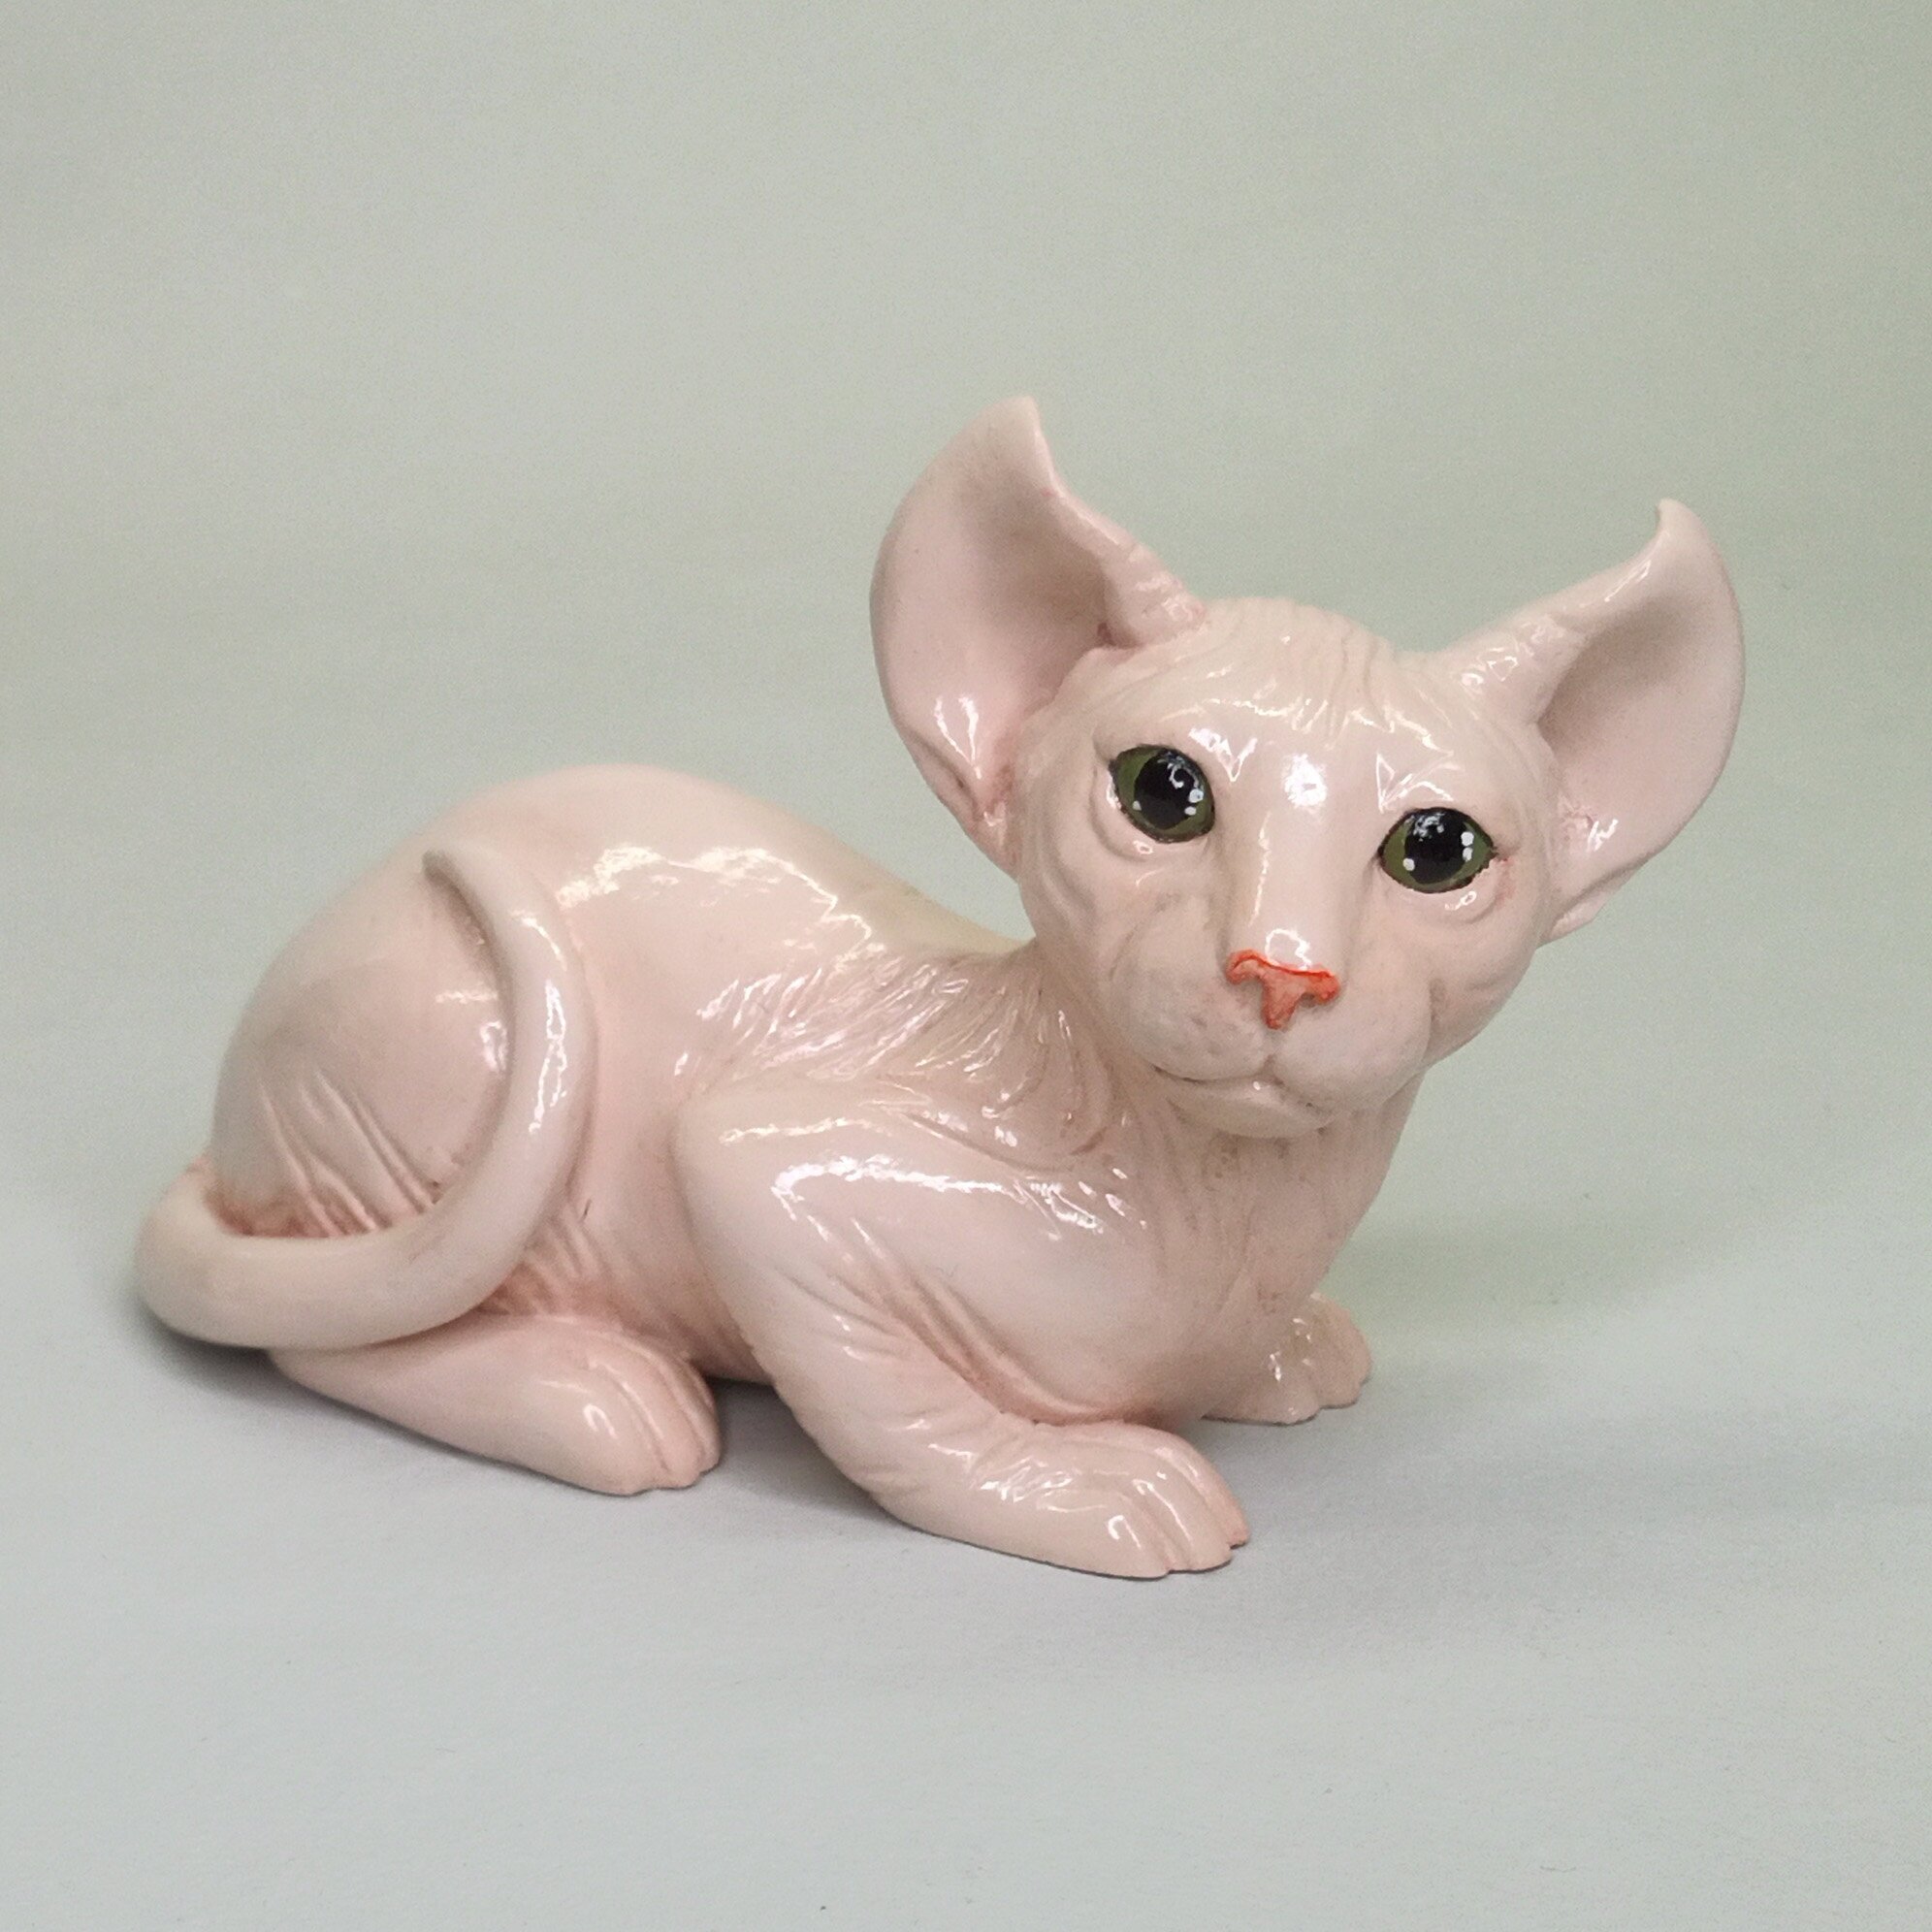 Статуэтка кошки сфинкс "Сфинкс-эльф", авторская ручная работа, розовый